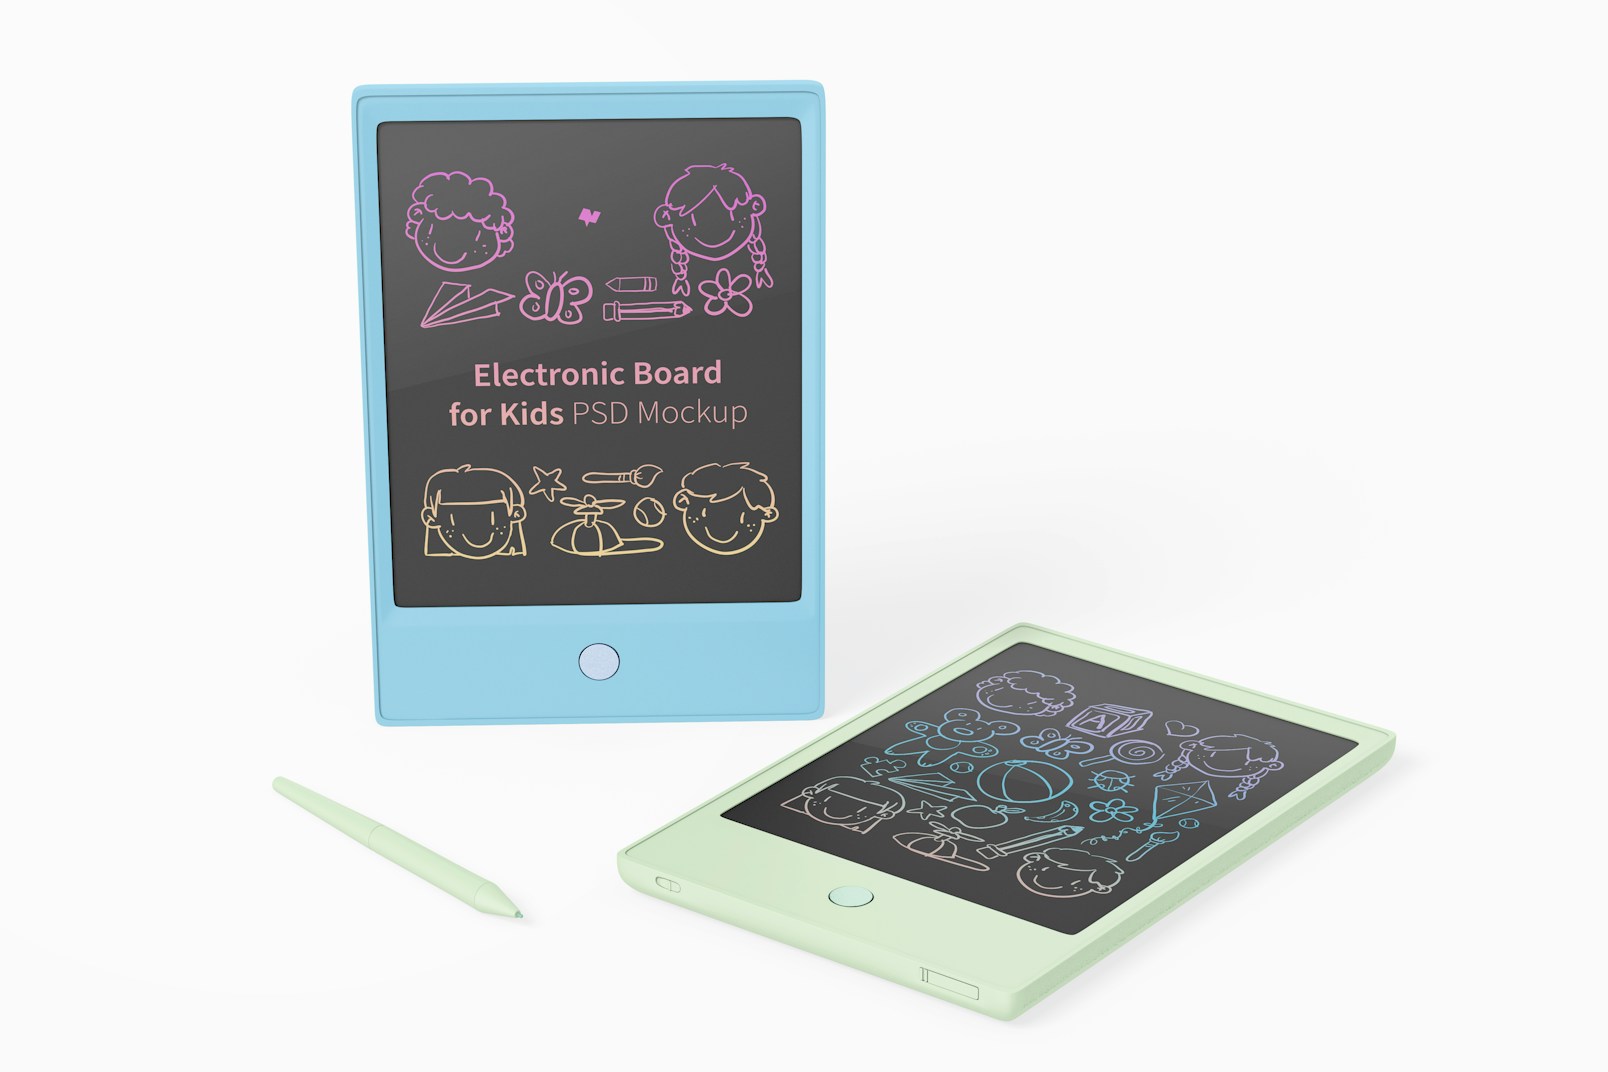 Maqueta de Tableros Electrónicos para Niños, de Pie y Caída